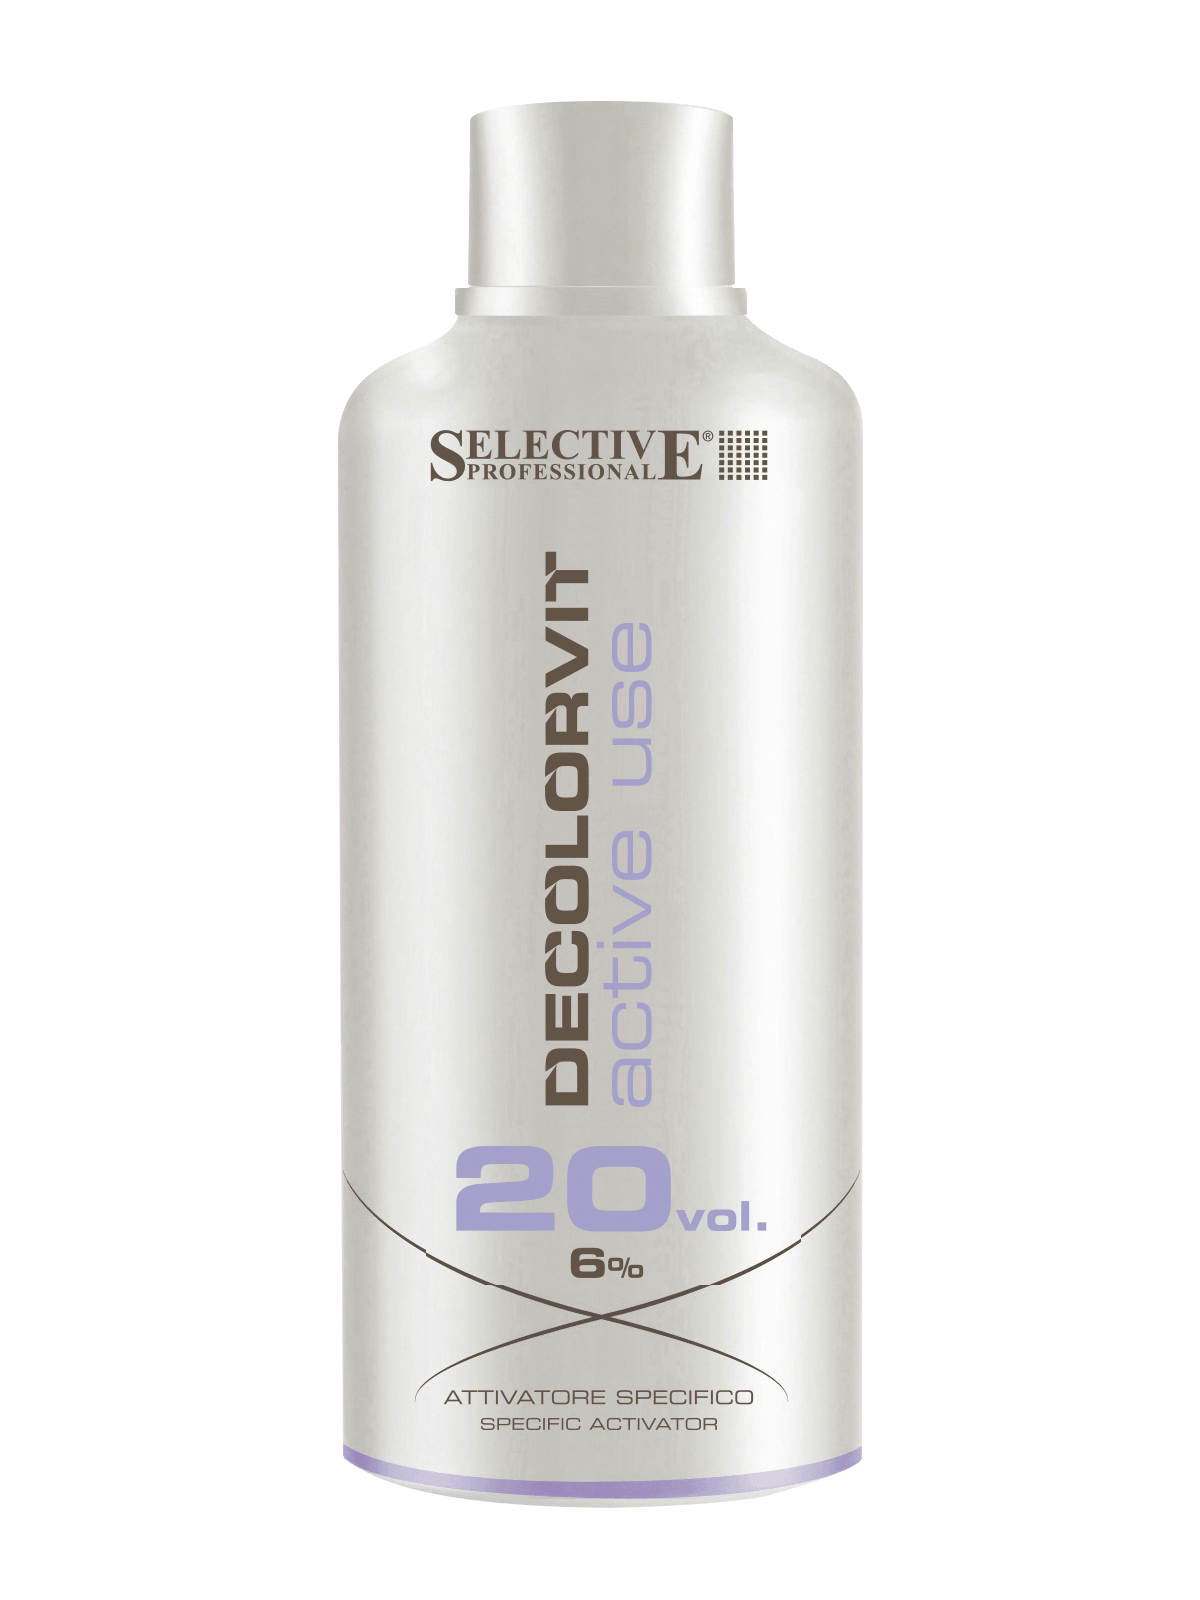 Окислители для волос:  SELECTIVE PROFESSIONAL -  Специальный активатор Decolorvit Active Use 6% (750 мл)